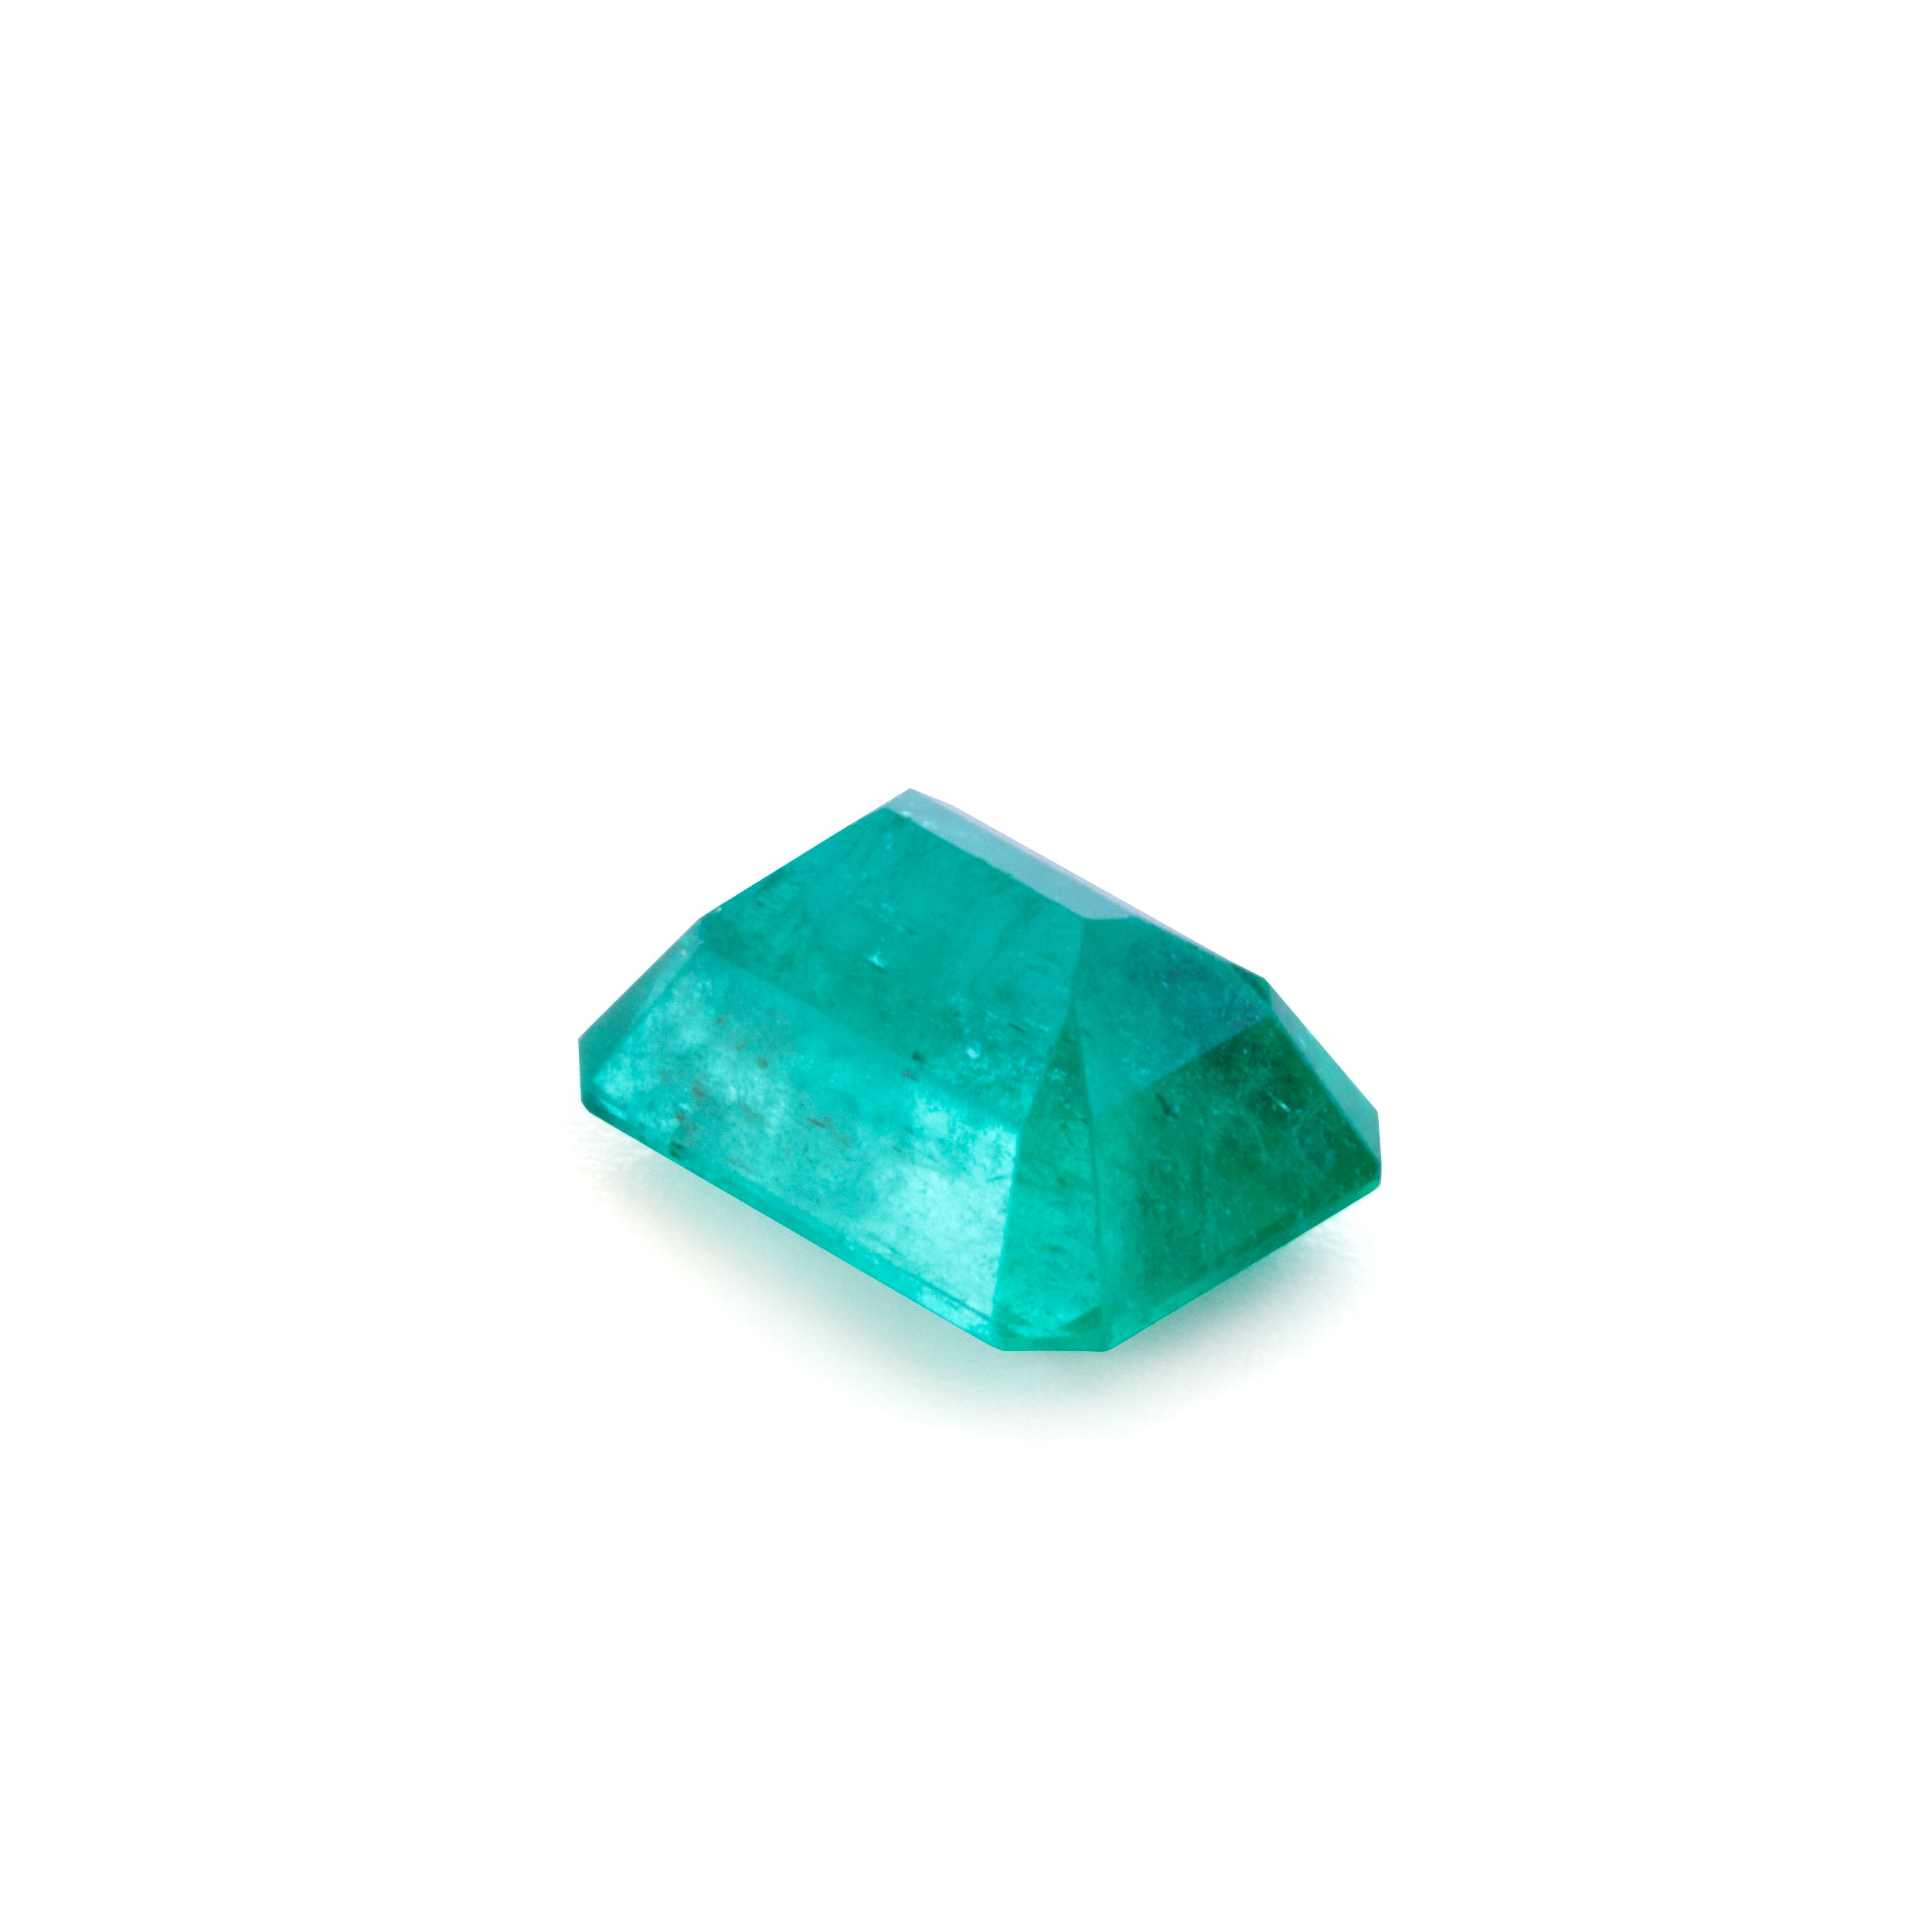 Emerald 3.38 carat Faceted Gemstone - 22-028 - Crystalarium